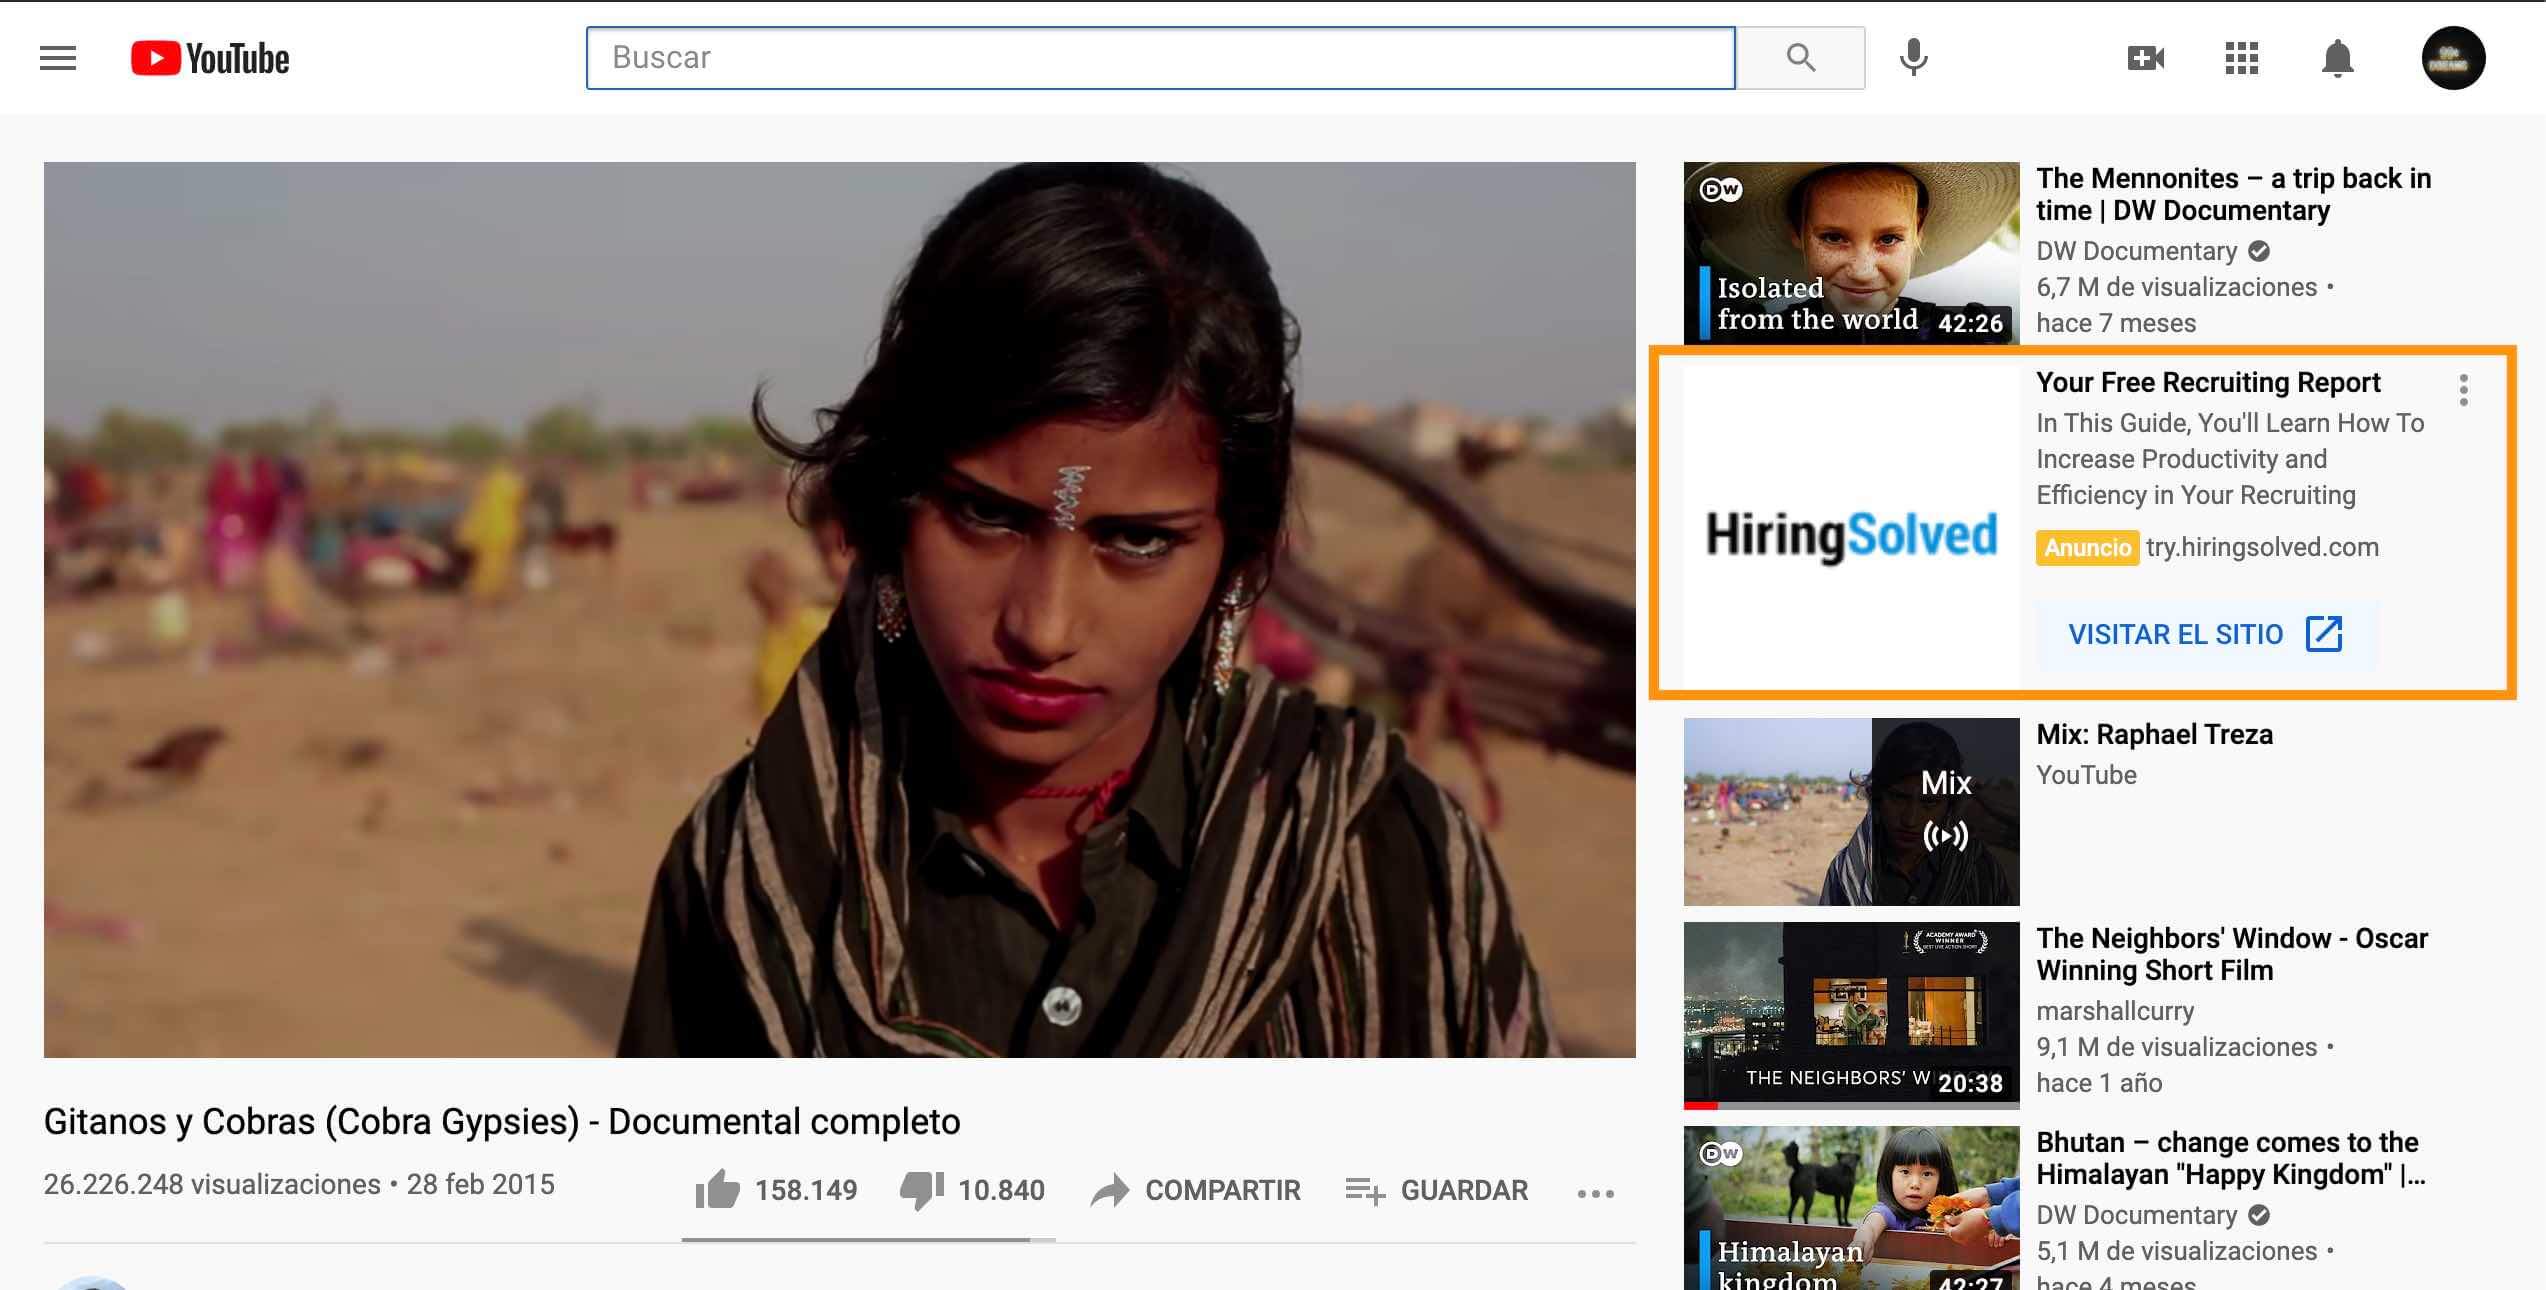 Tipos de publicidad en YouTube: TrueView video discovery en barra lateral